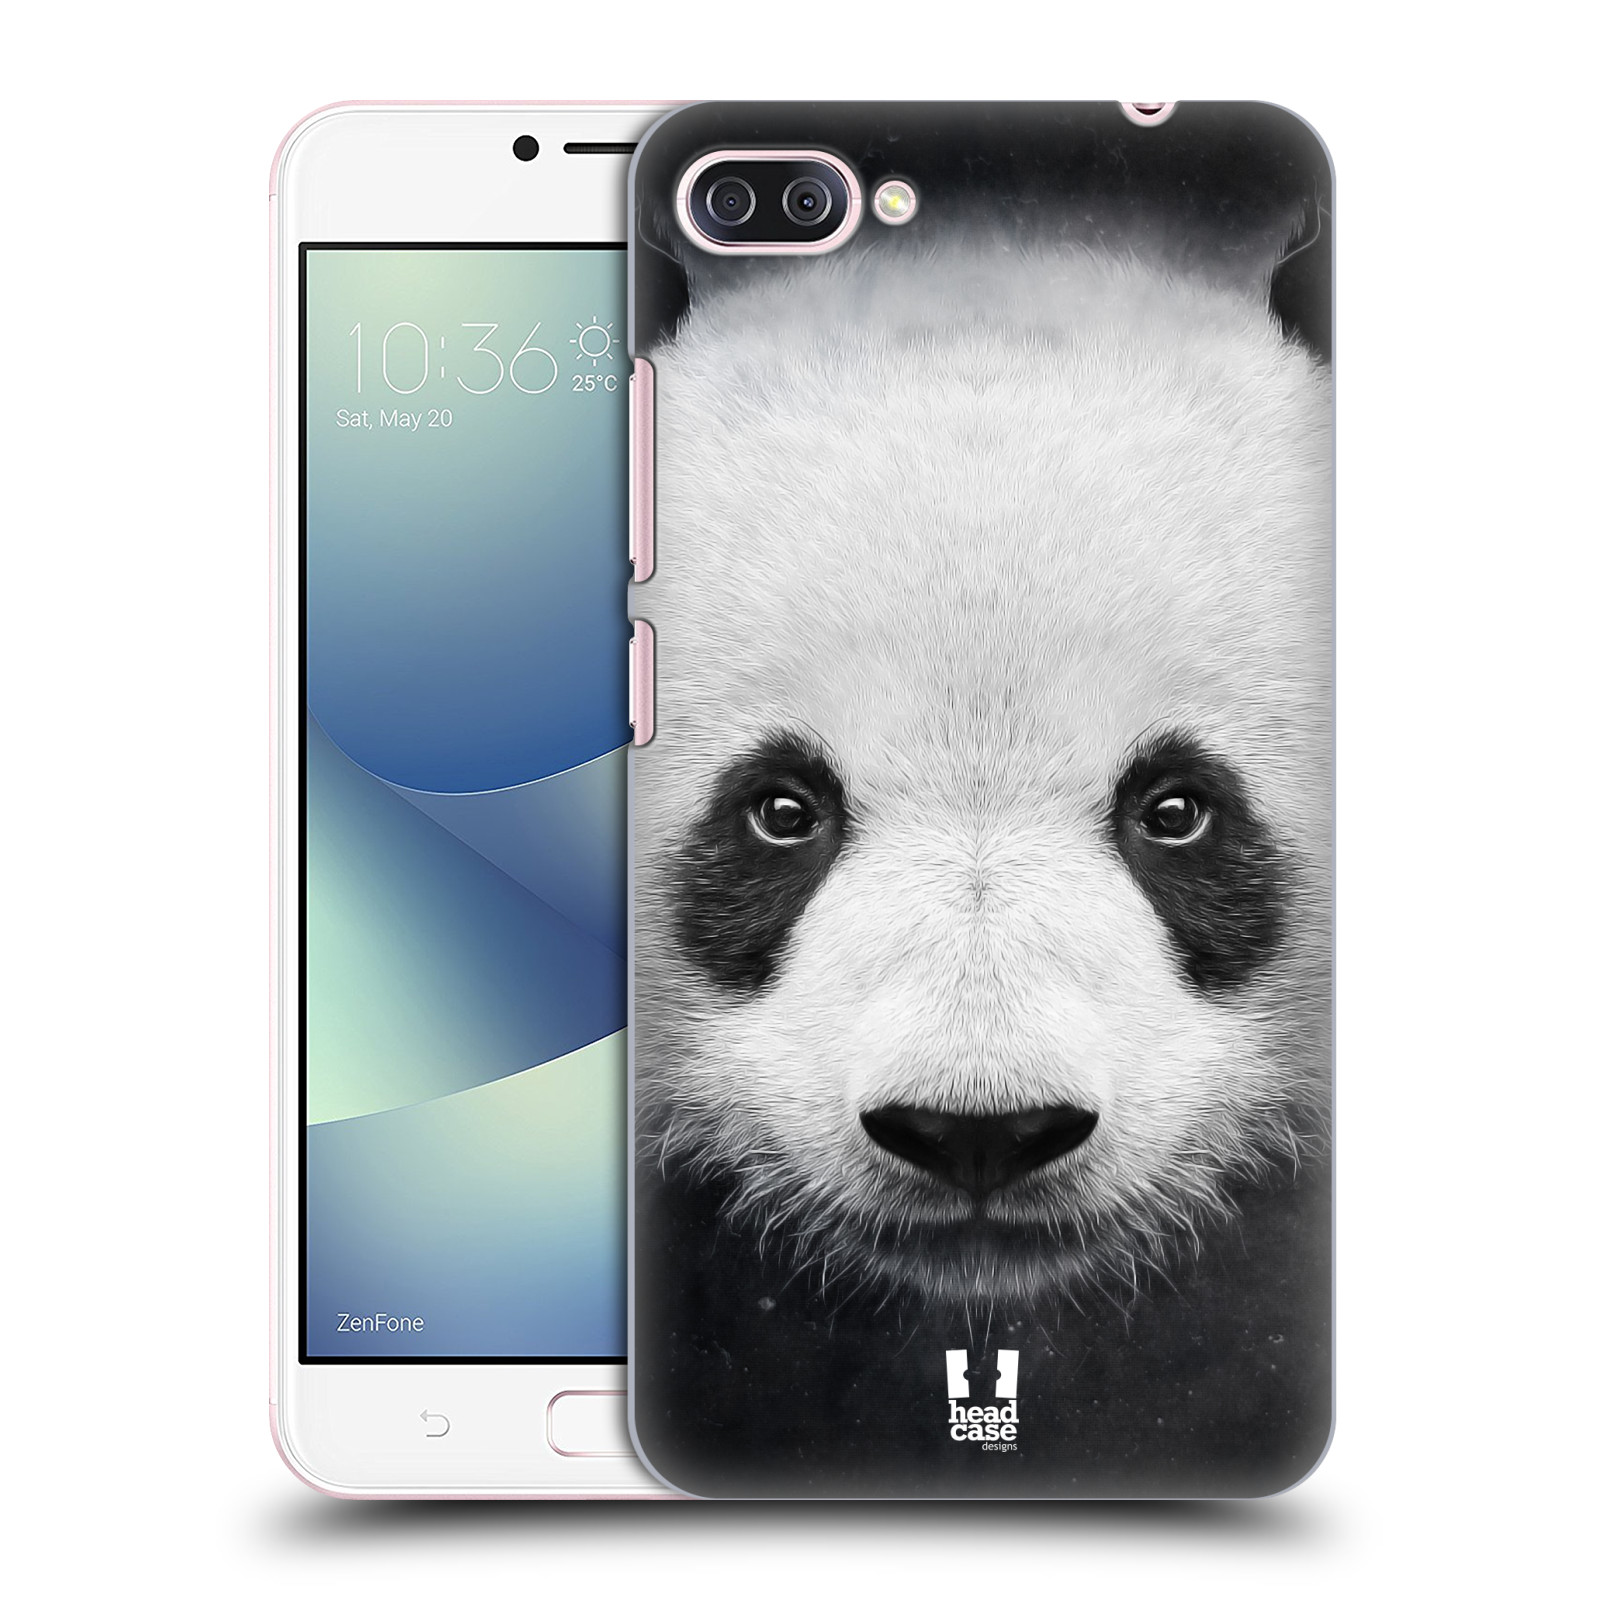 HEAD CASE plastový obal na mobil Asus Zenfone 4 MAX ZC554KL vzor Zvířecí tváře medvěd panda